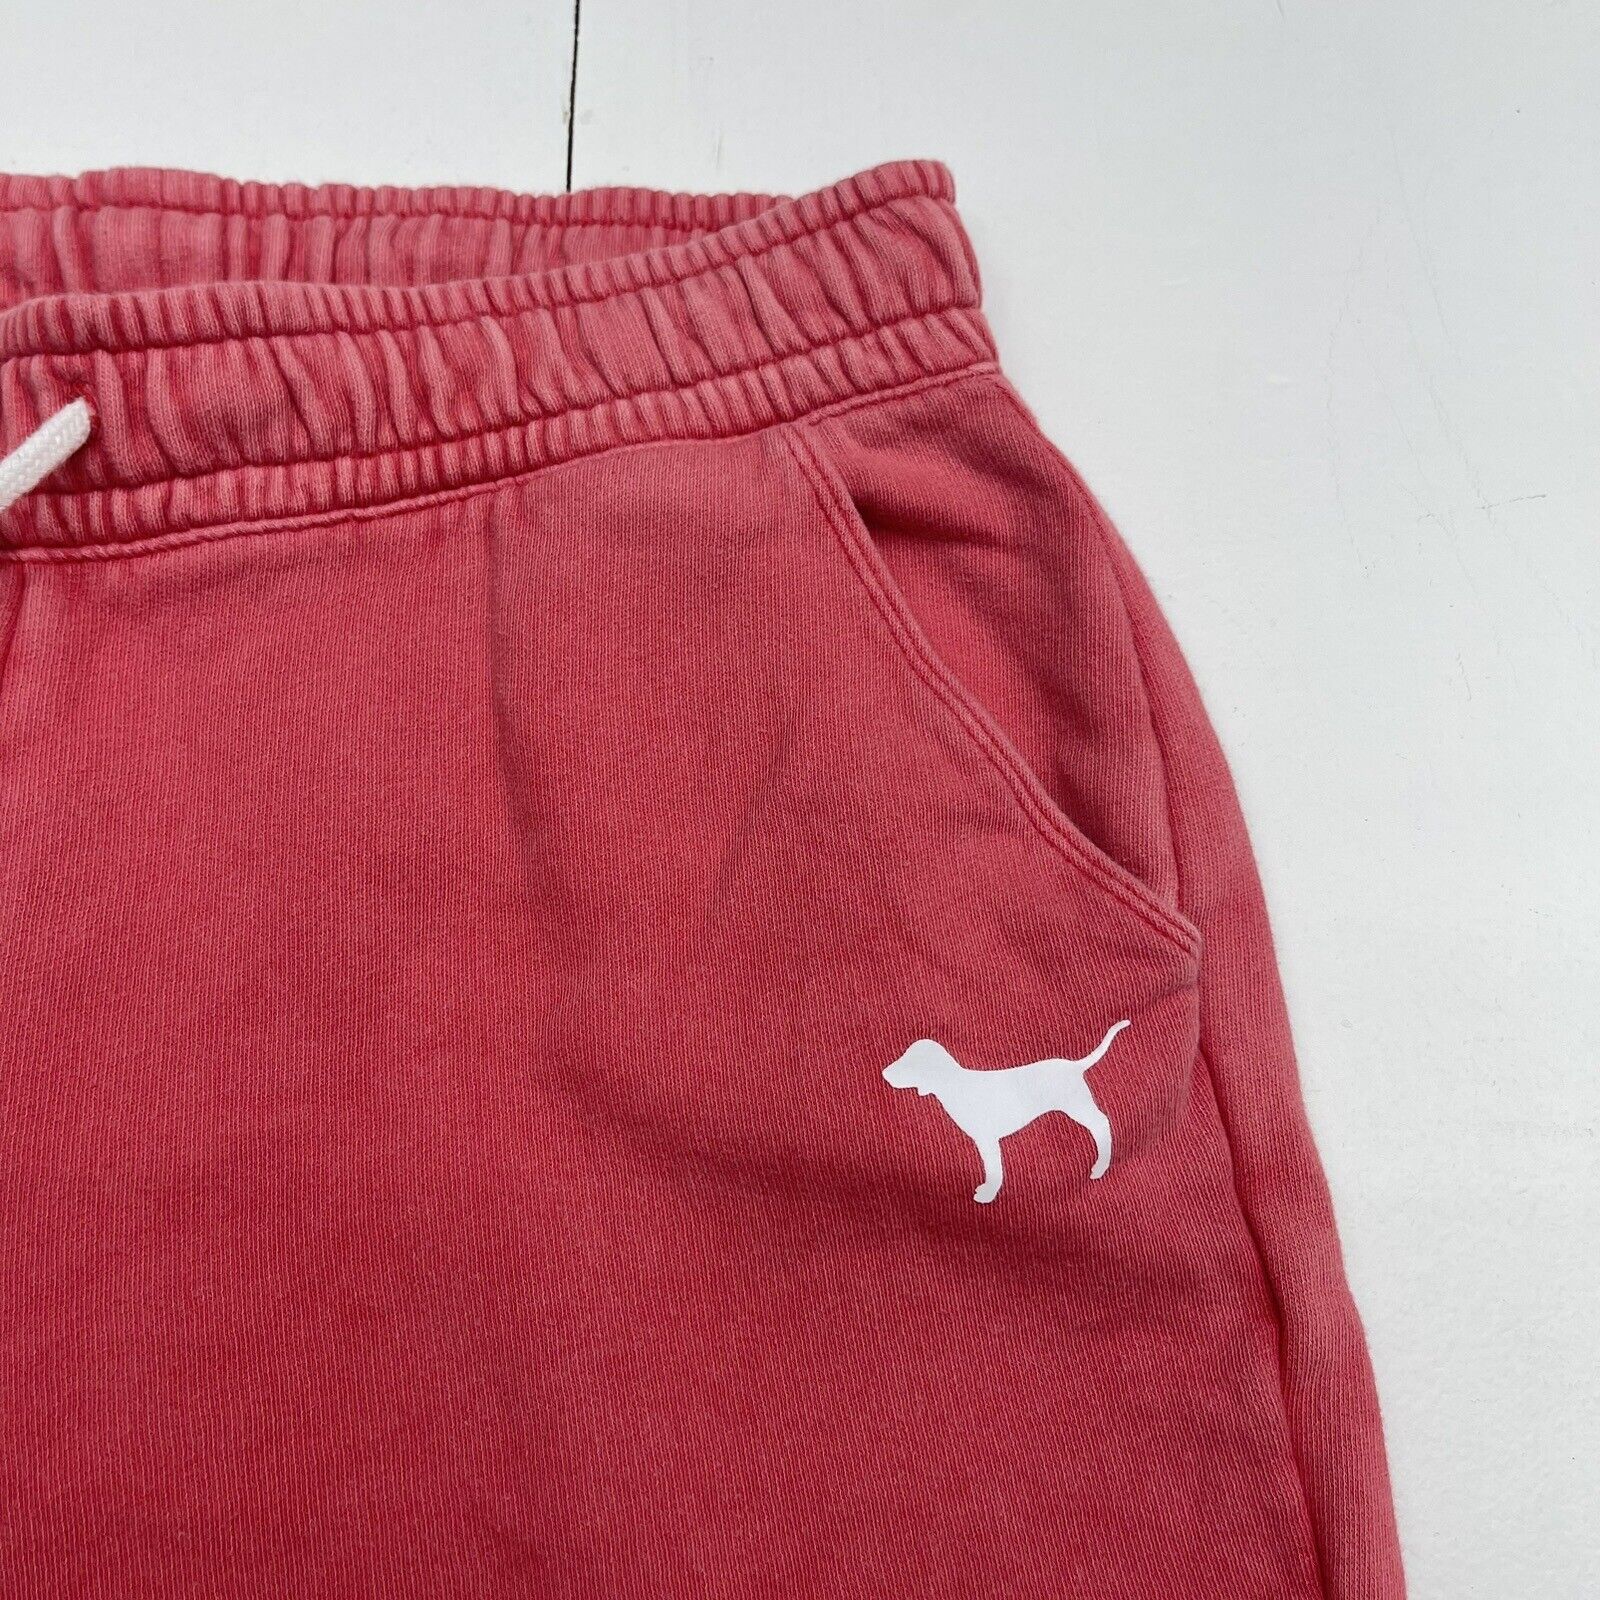 Pink Victoria’s Secret Faded Red Jogger Sweatpants Women’s Medium